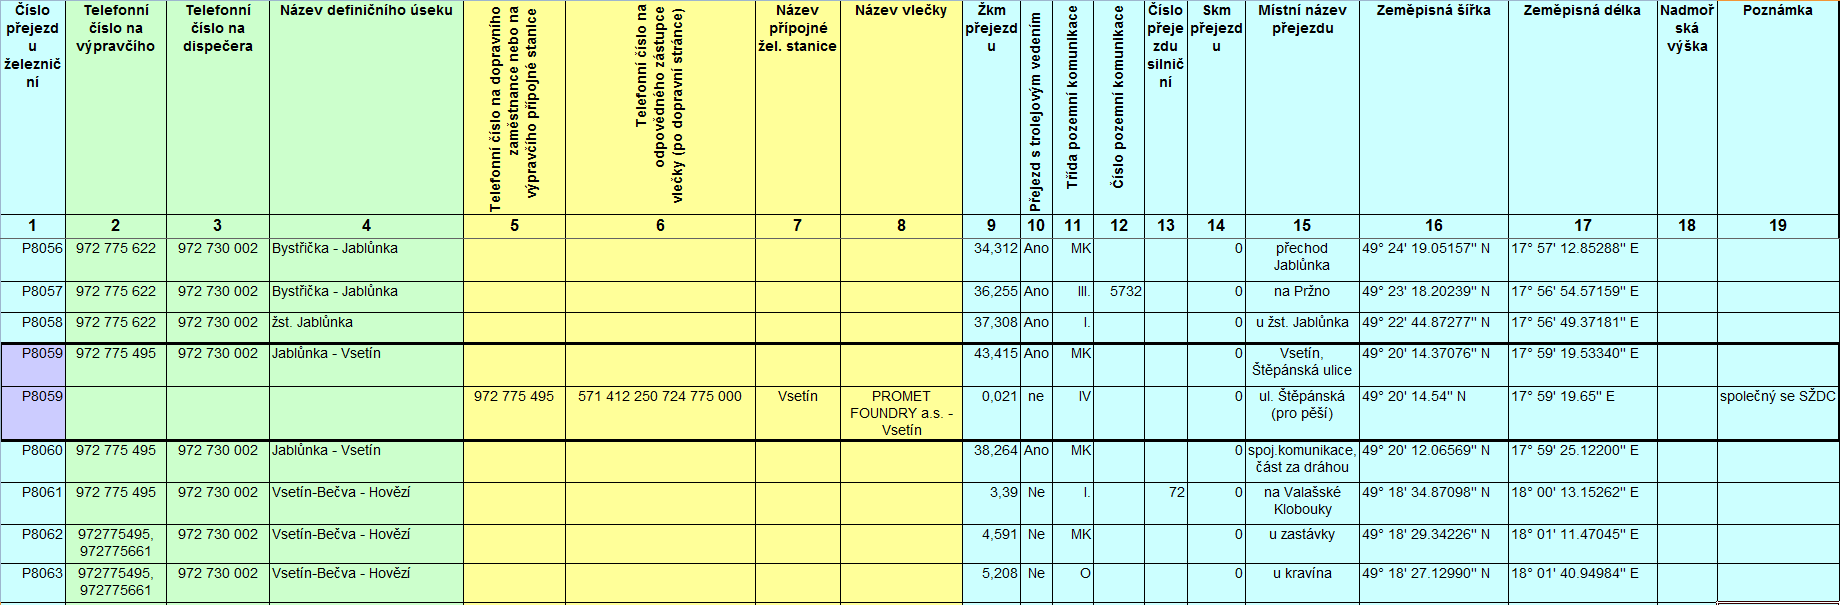 příloha 3 Datové rozhraní SŽDC-HZS A. Ukázka tabulky poznámky k formě a obsahu tabulky: 1.